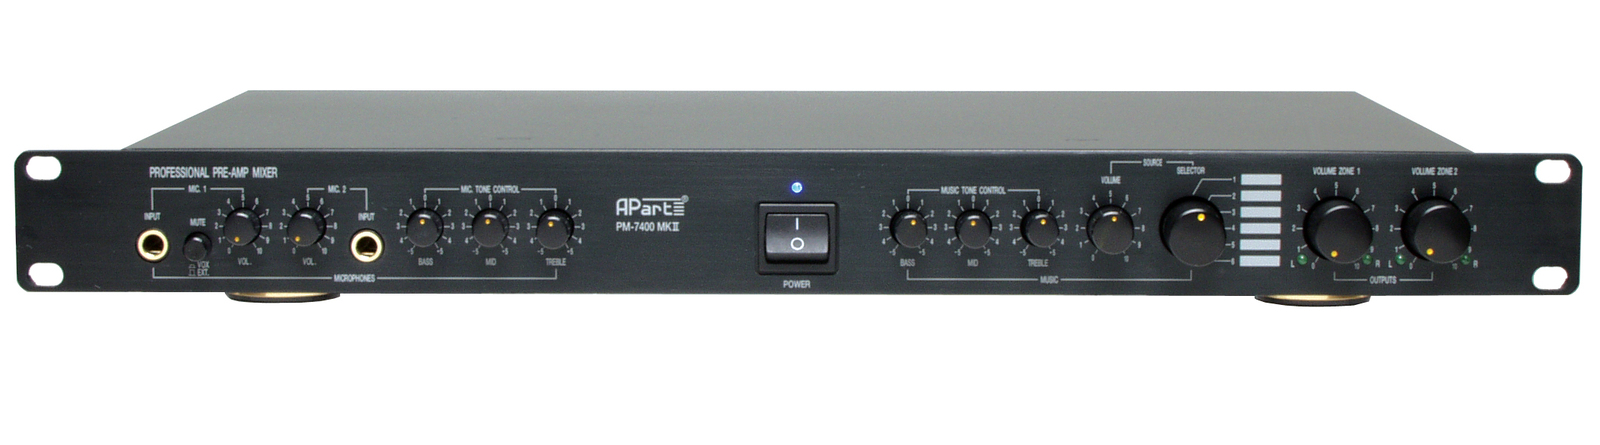 Amplificador Estéreo APART PM-7400 MKII